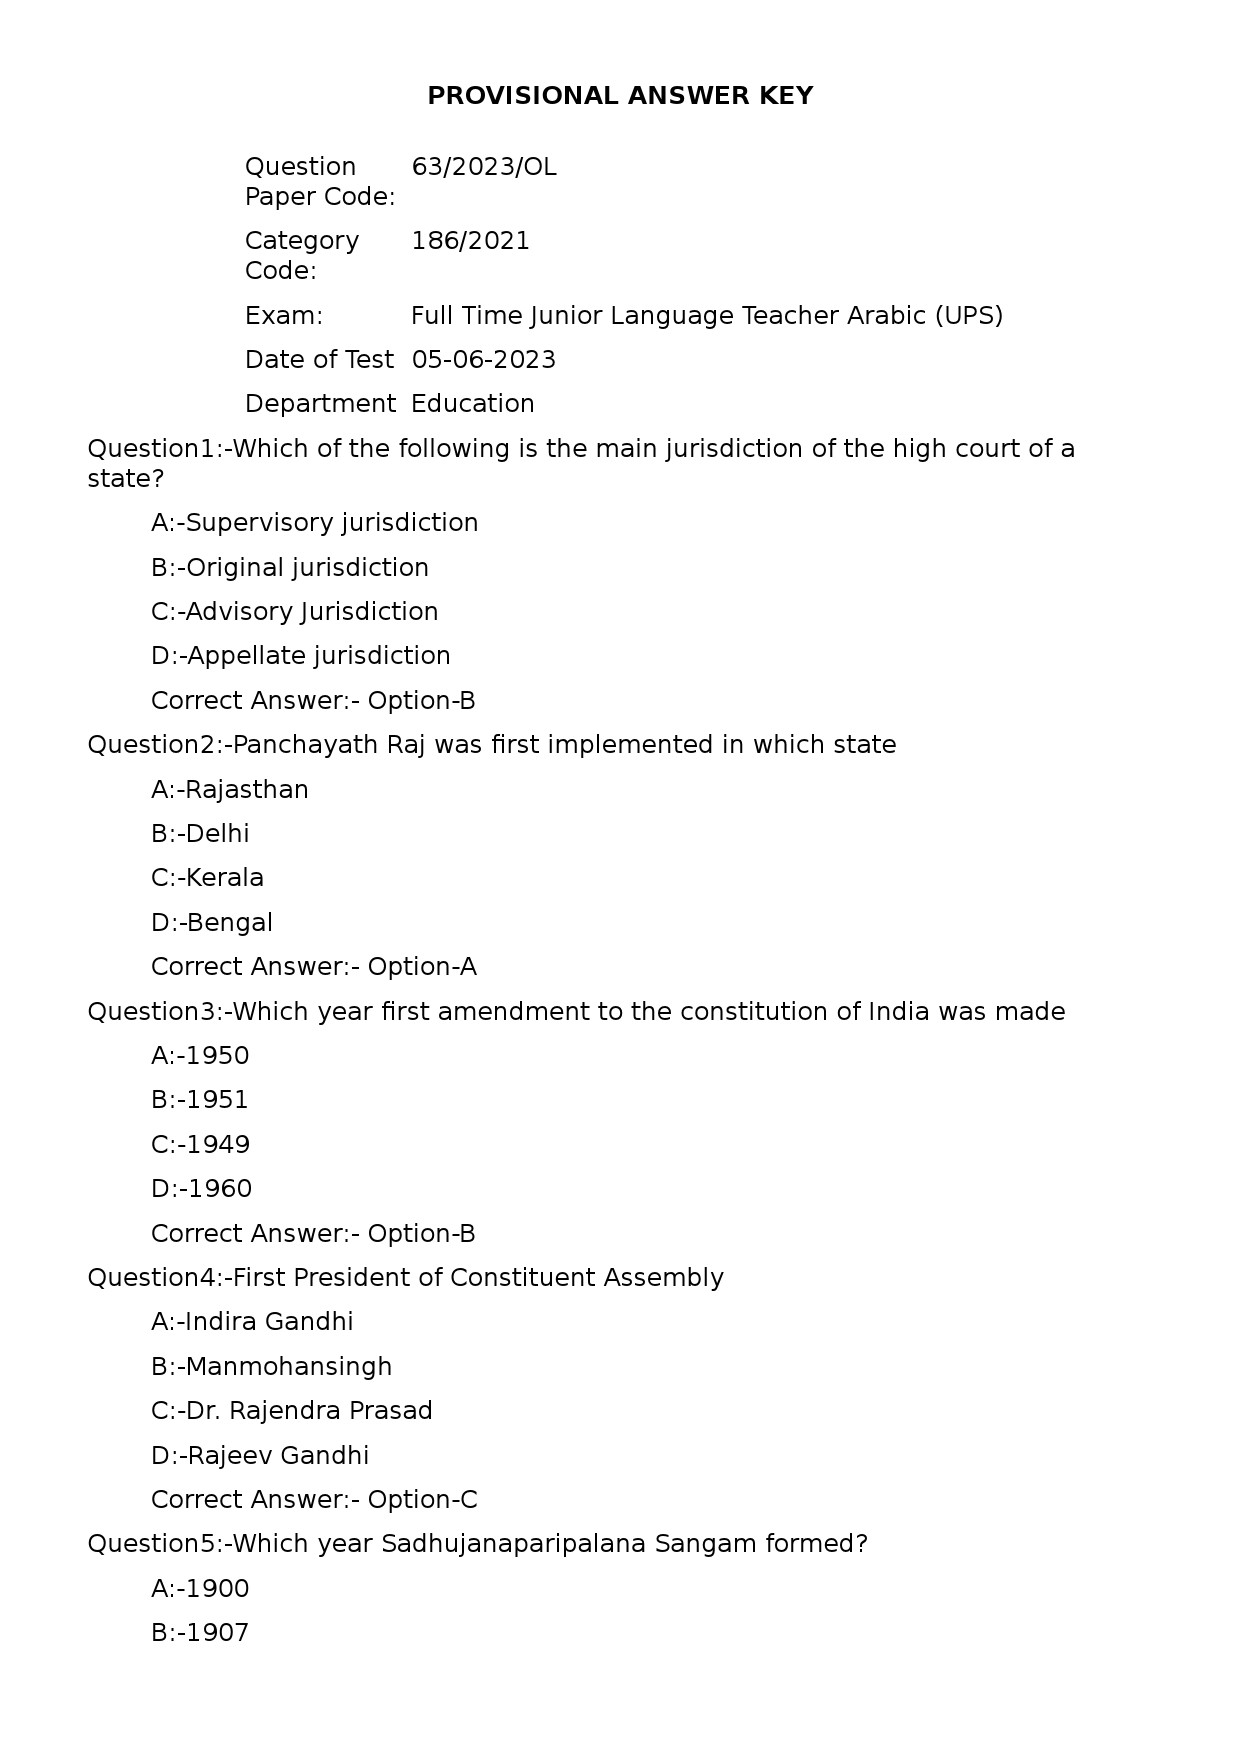 KPSC Full Time Junior Language Teacher Arabic Exam 2023 Code 632023OL 1